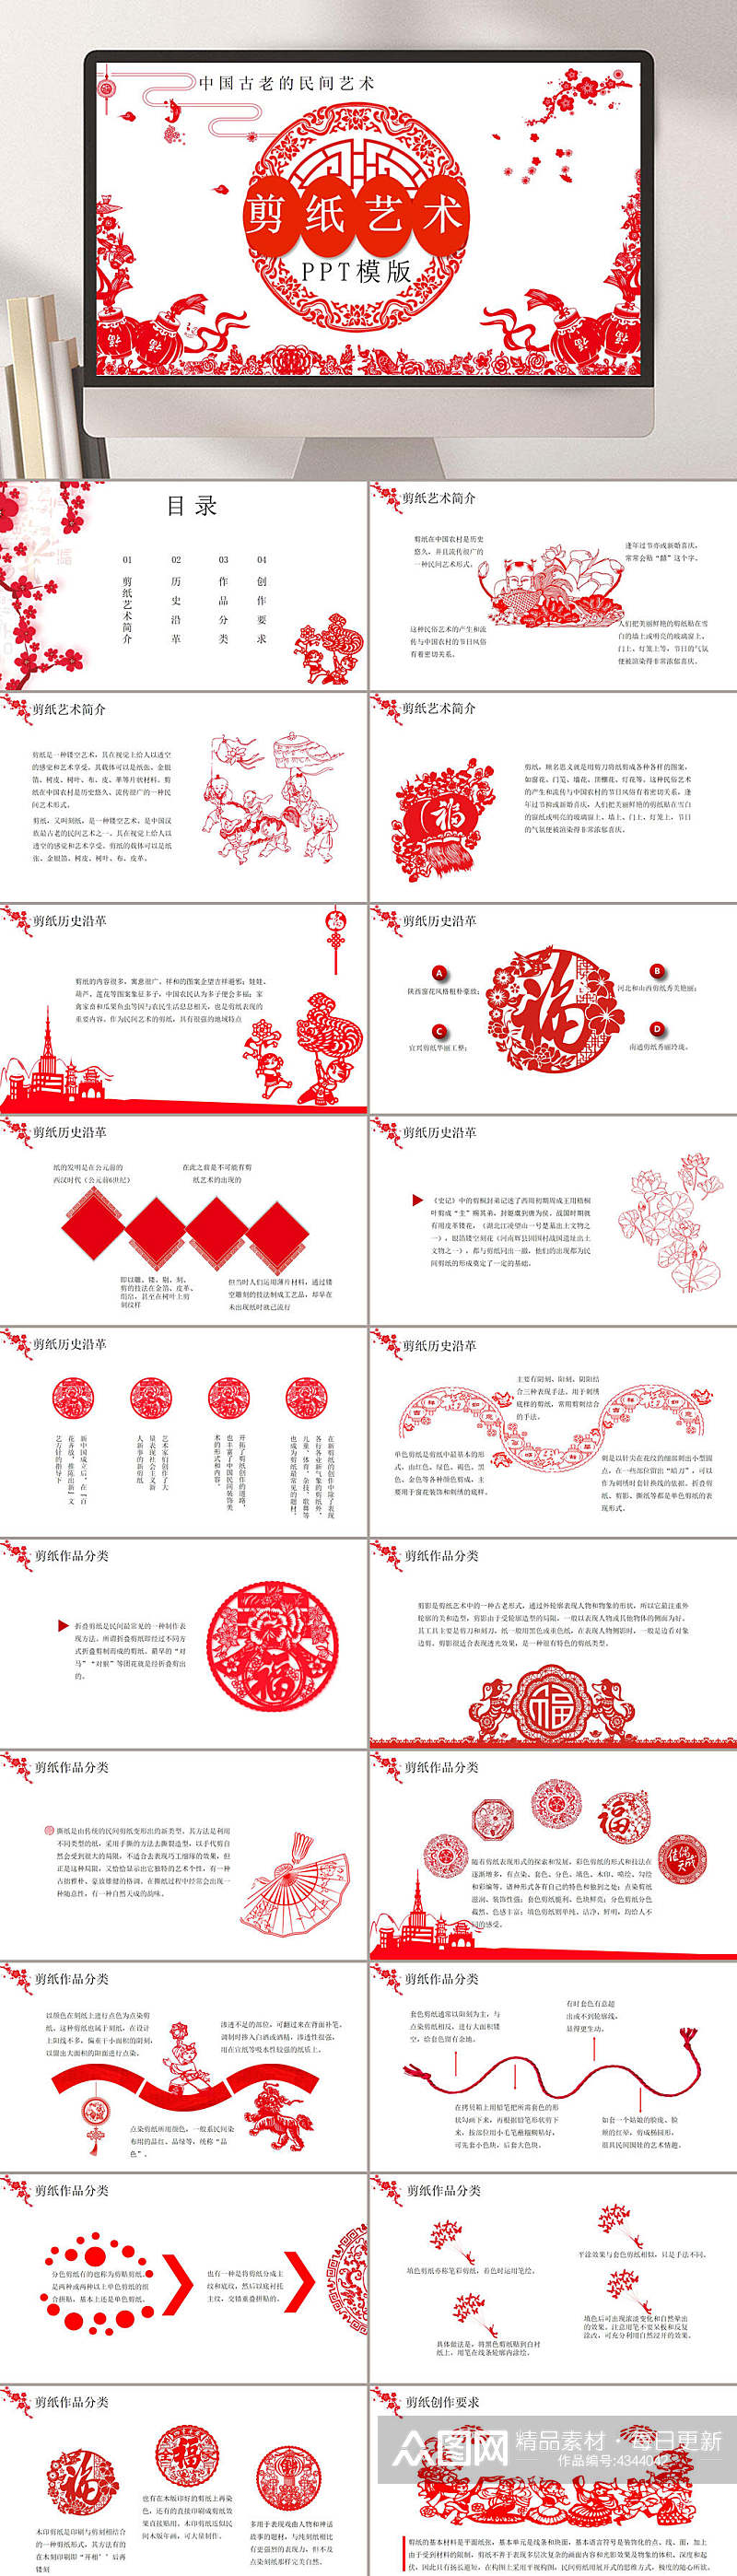 中国风剪纸艺术民间艺术PPT素材